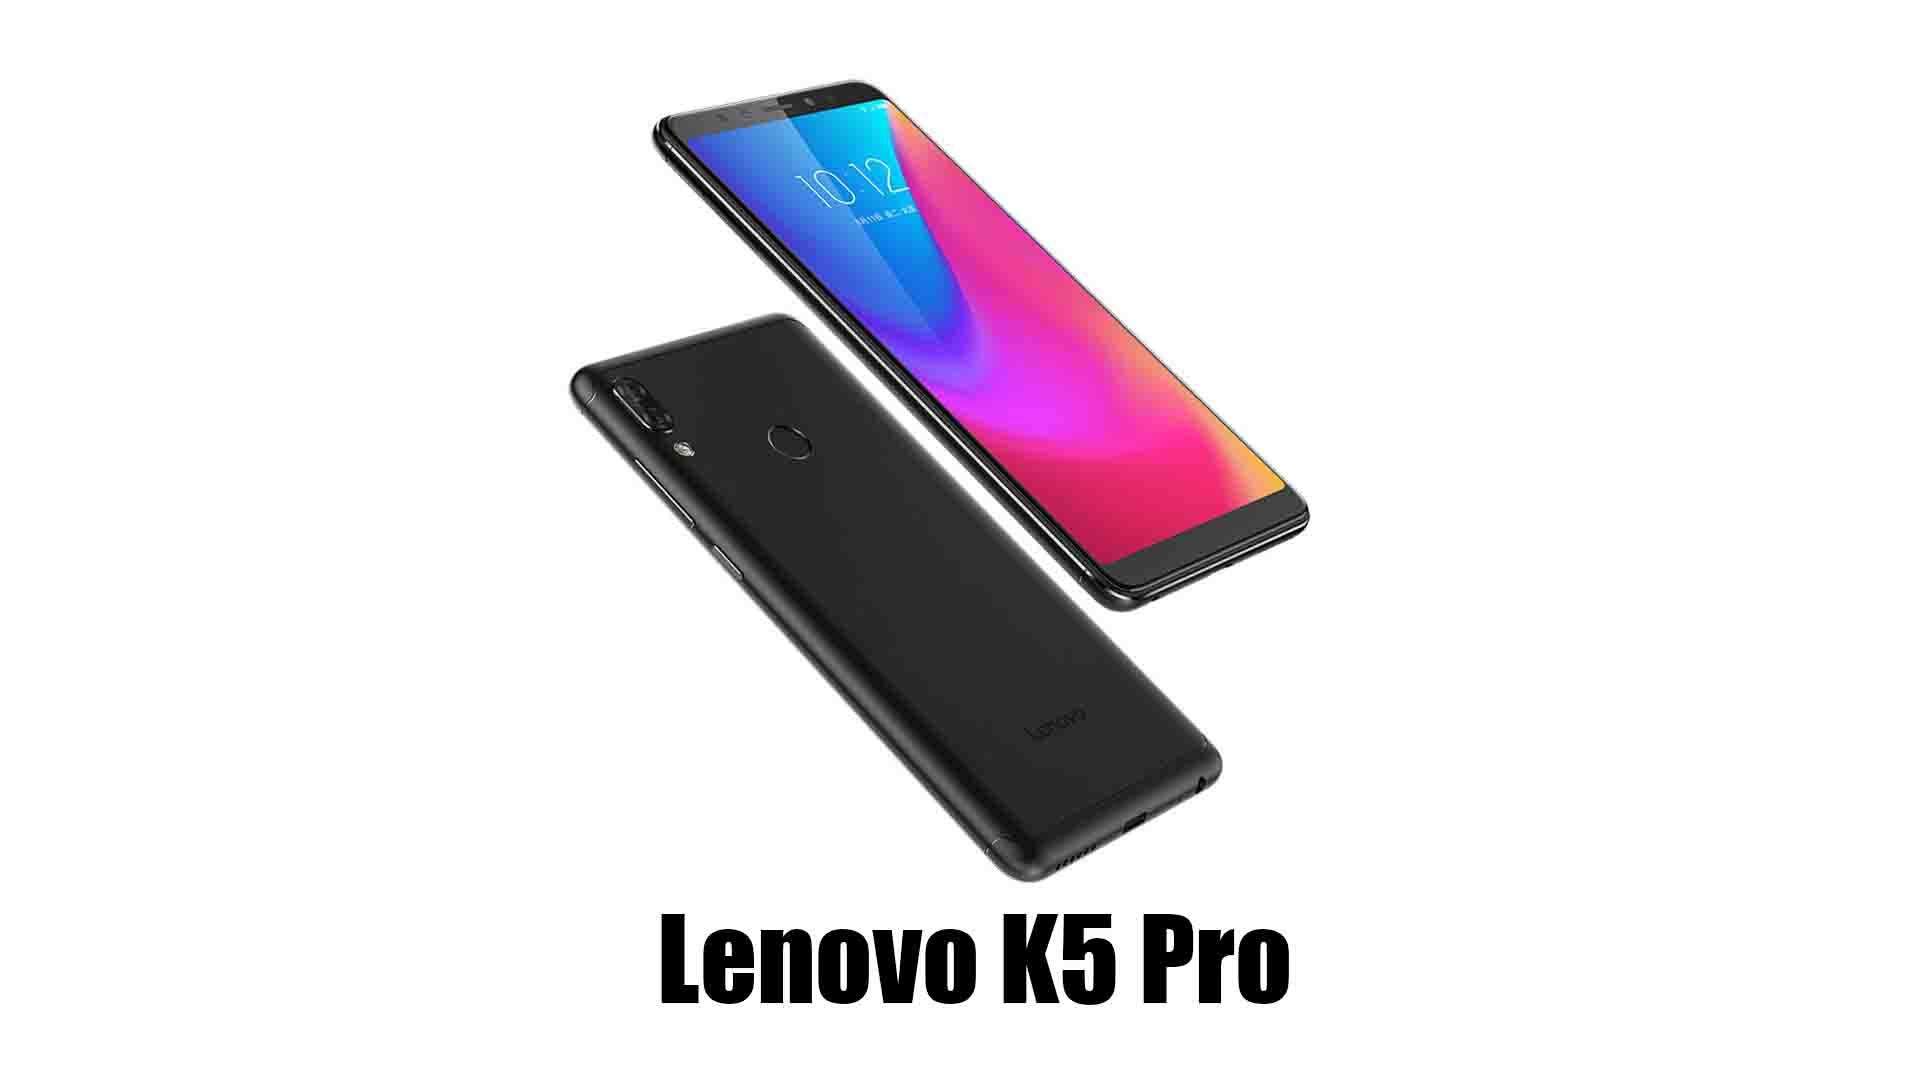 Lenovo K5 Pro स्मार्टफोन को लाँच कर दिया गया, इसमें चार कैमरे दिये गये है